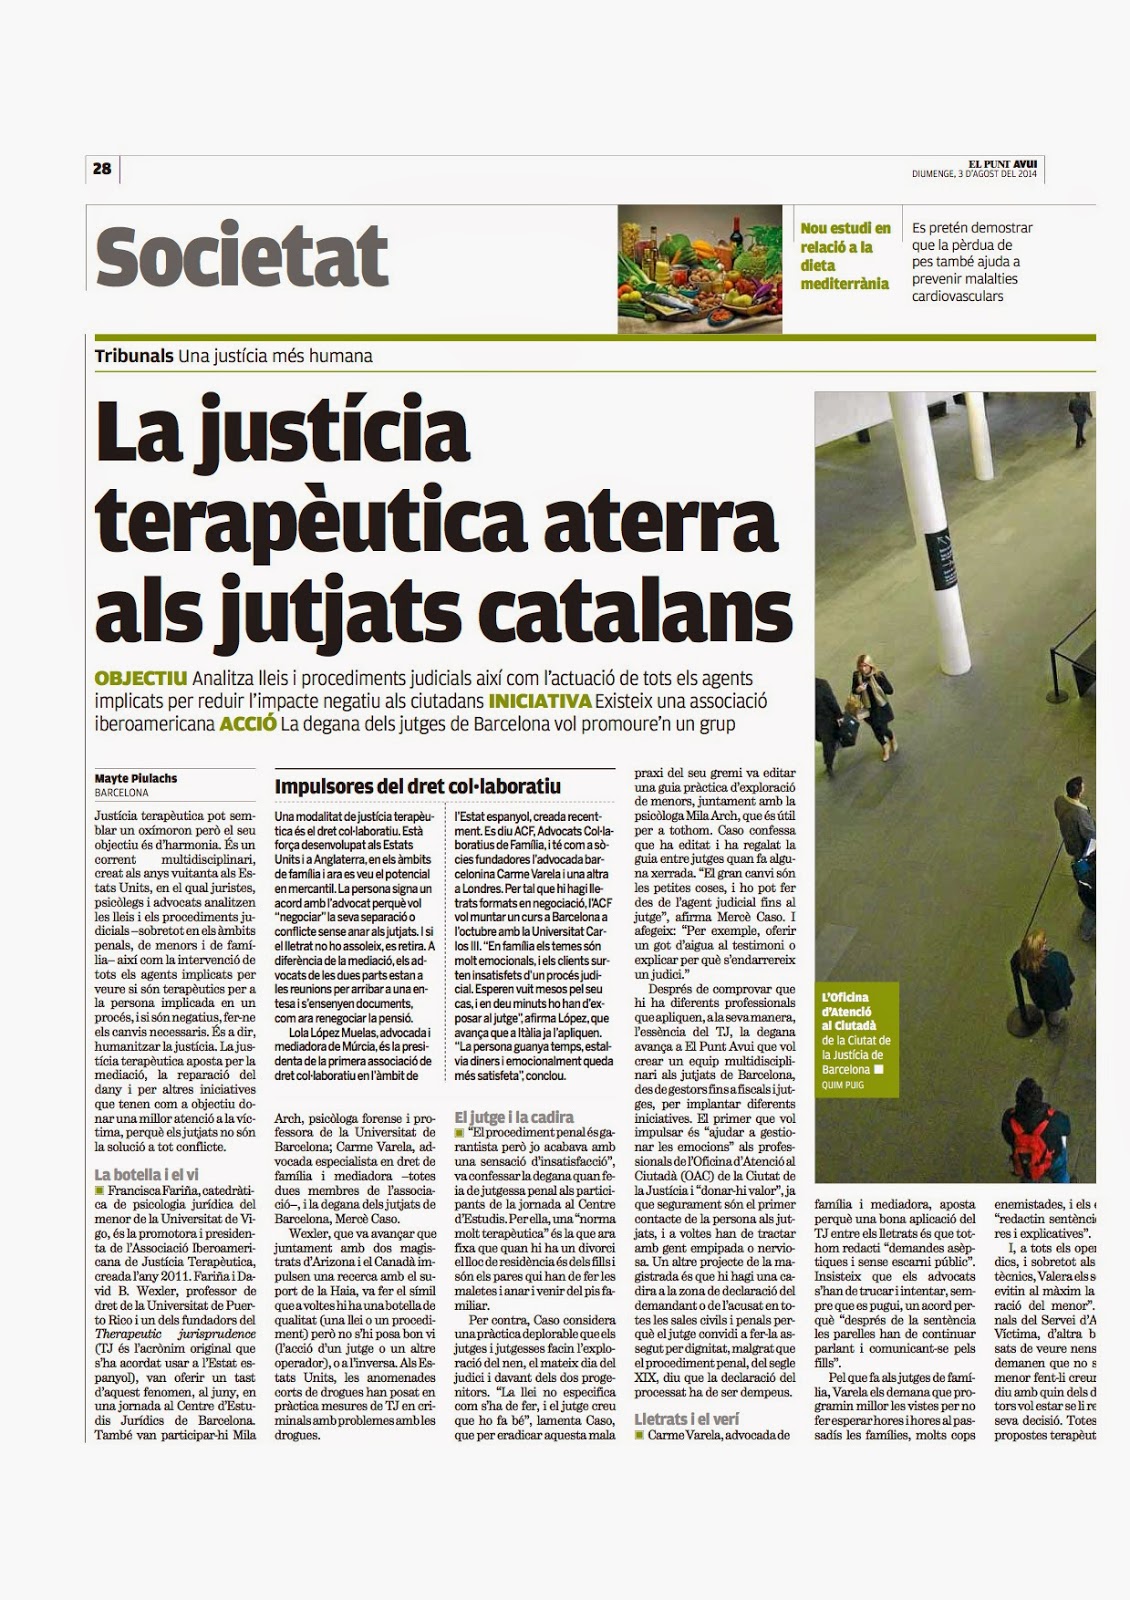 http://www.elpuntavui.cat/noticia/article/2-societat/5-societat/766241-la-justicia-terapeutica-aterra-als-jutjats-catalans.html?cca=1&piwik_campaign=rss&piwik_kwd=portada&utm_source=rss&utm_medium=portada&utm_campaign=rss